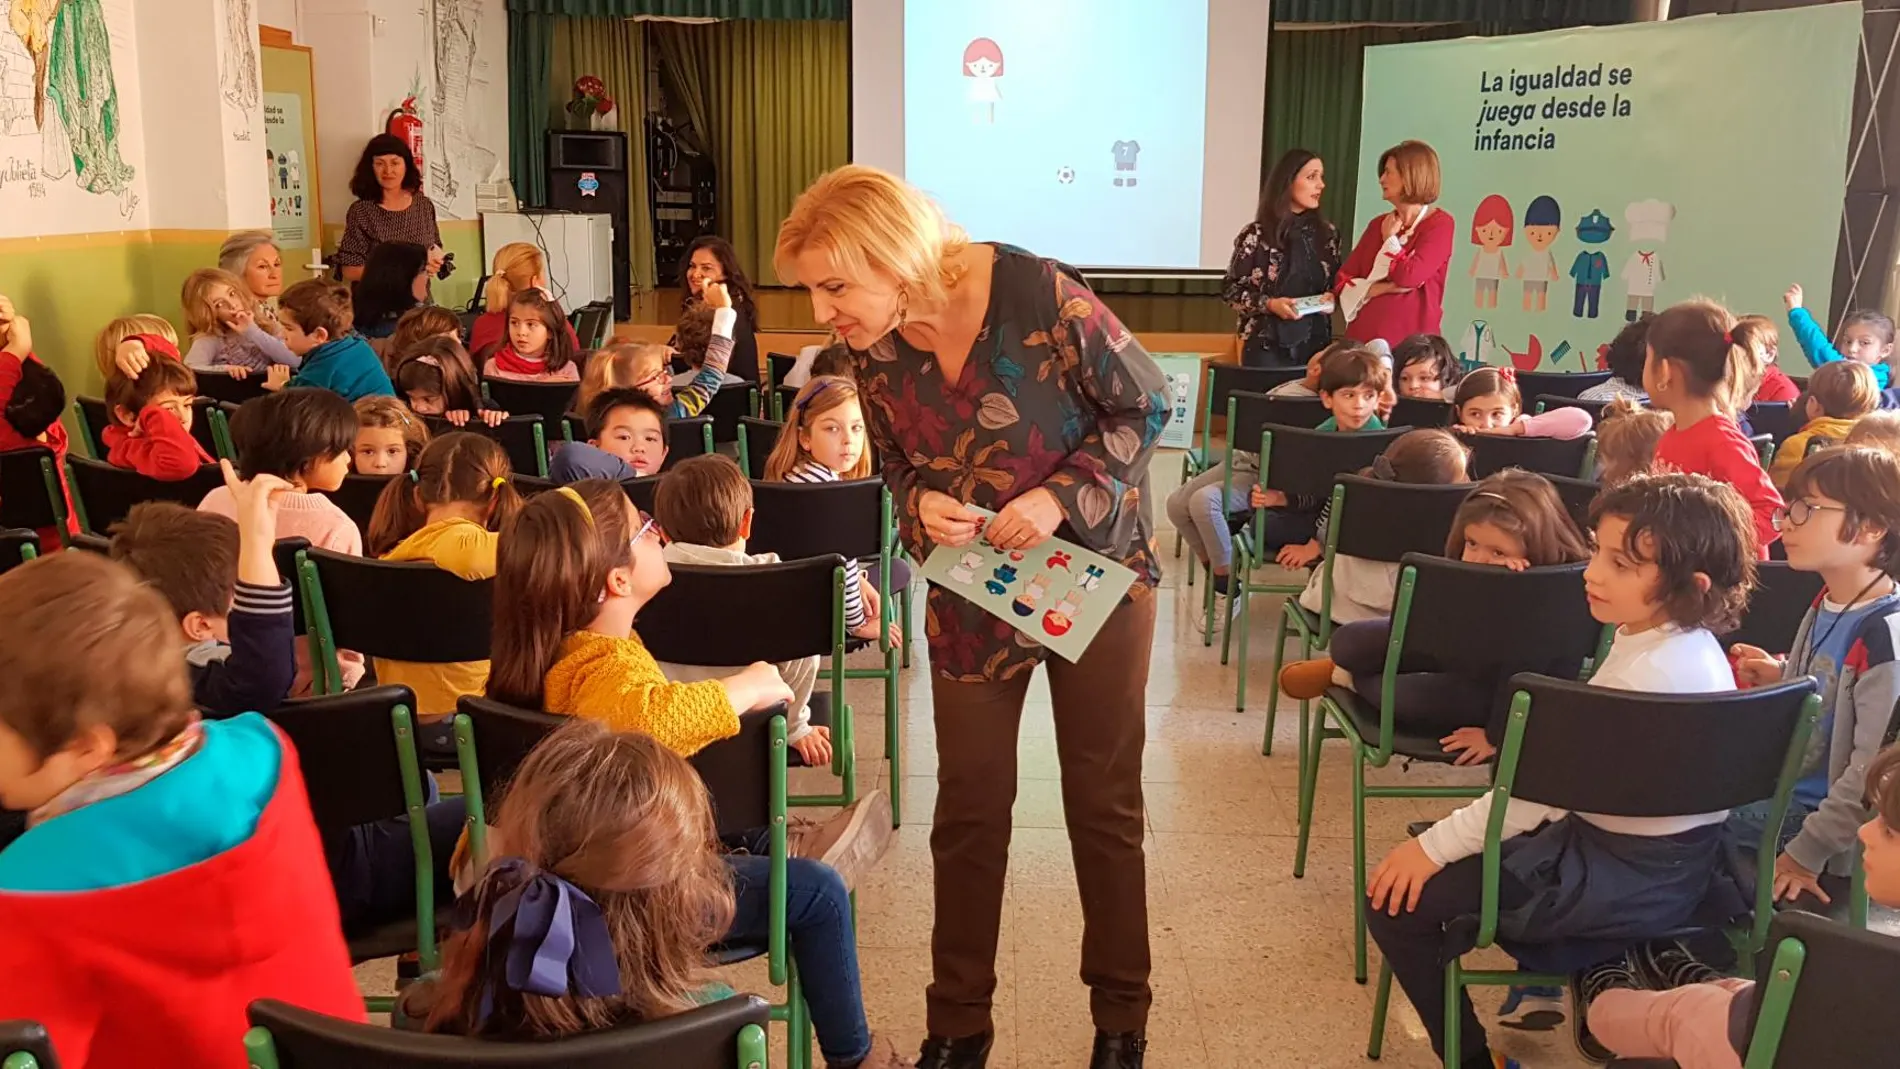 La titular de Familia e Igualdad de Oportunidades, ayer durante la presentación de la campaña de juguetes en el colegio María Maroto de Murcia